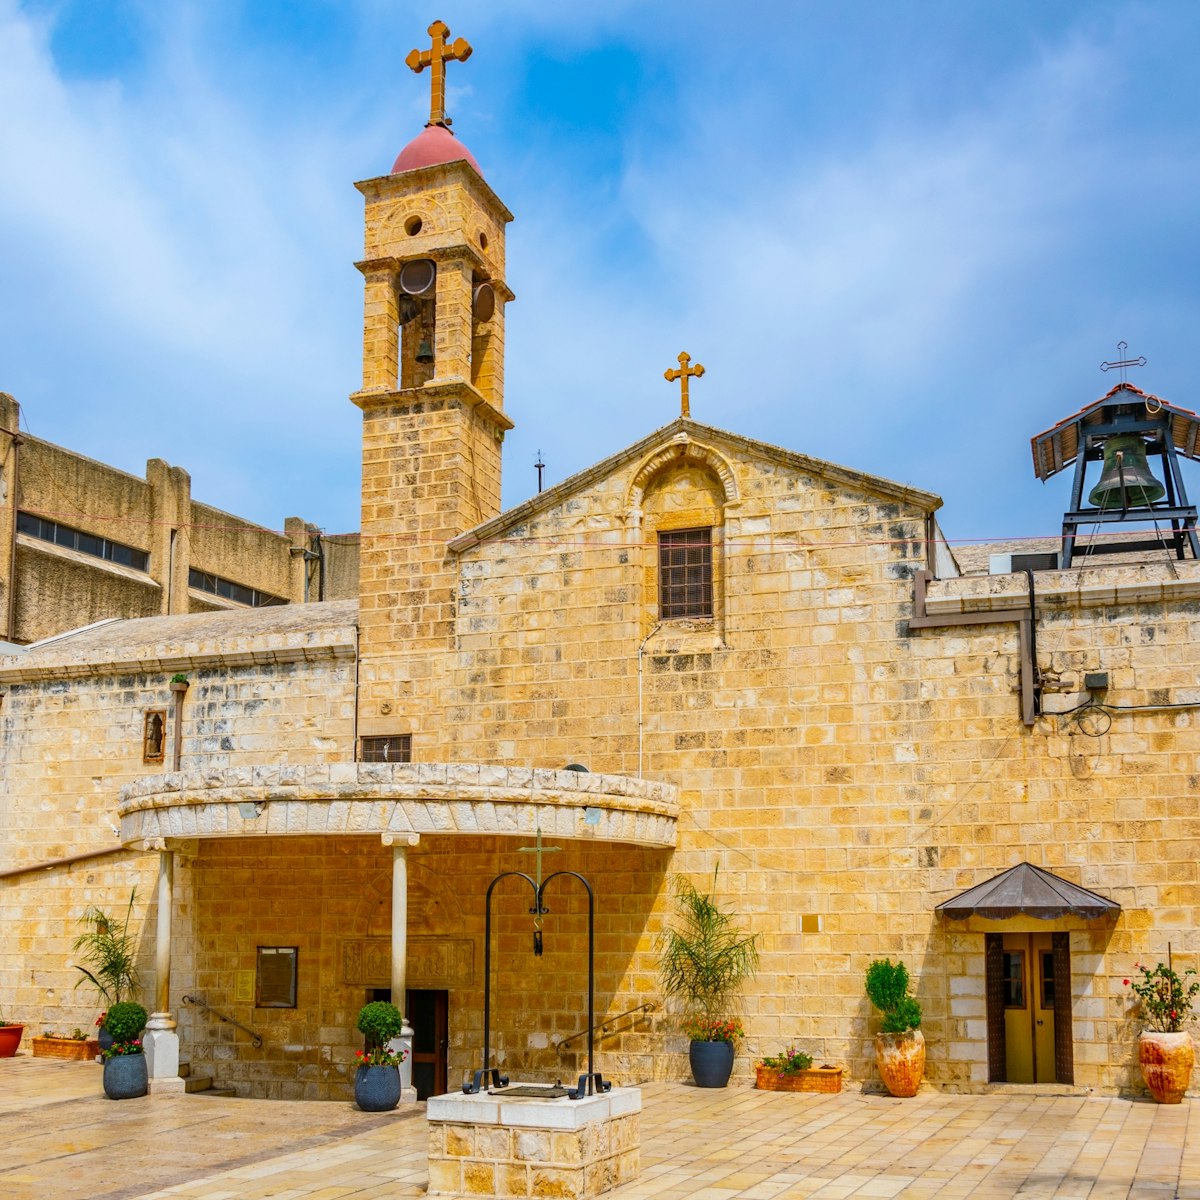 Greek orthodox church of the annunciation in Nazareth, Israel.